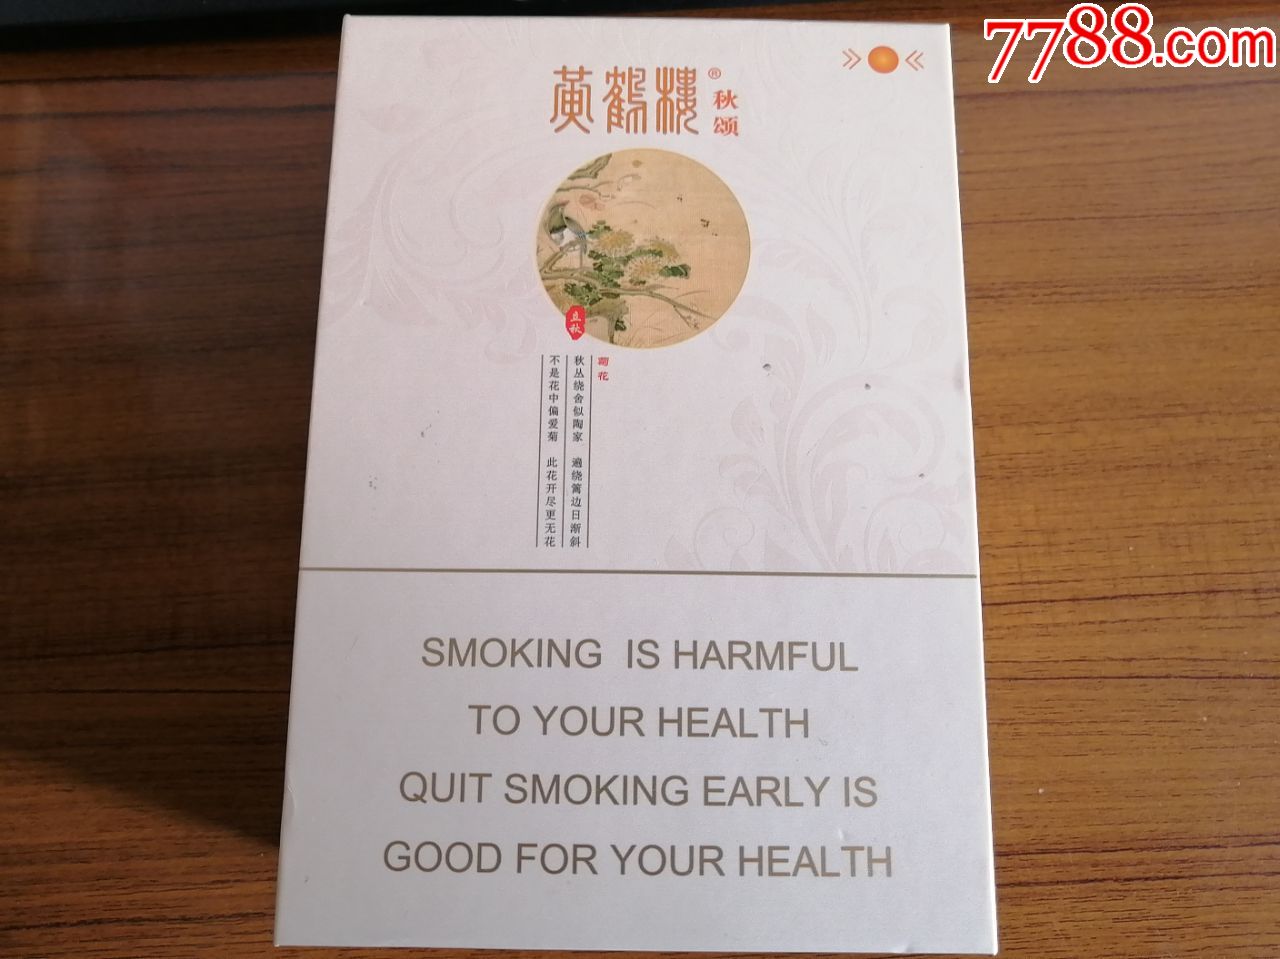 黄鹤楼正方形包装香烟图片